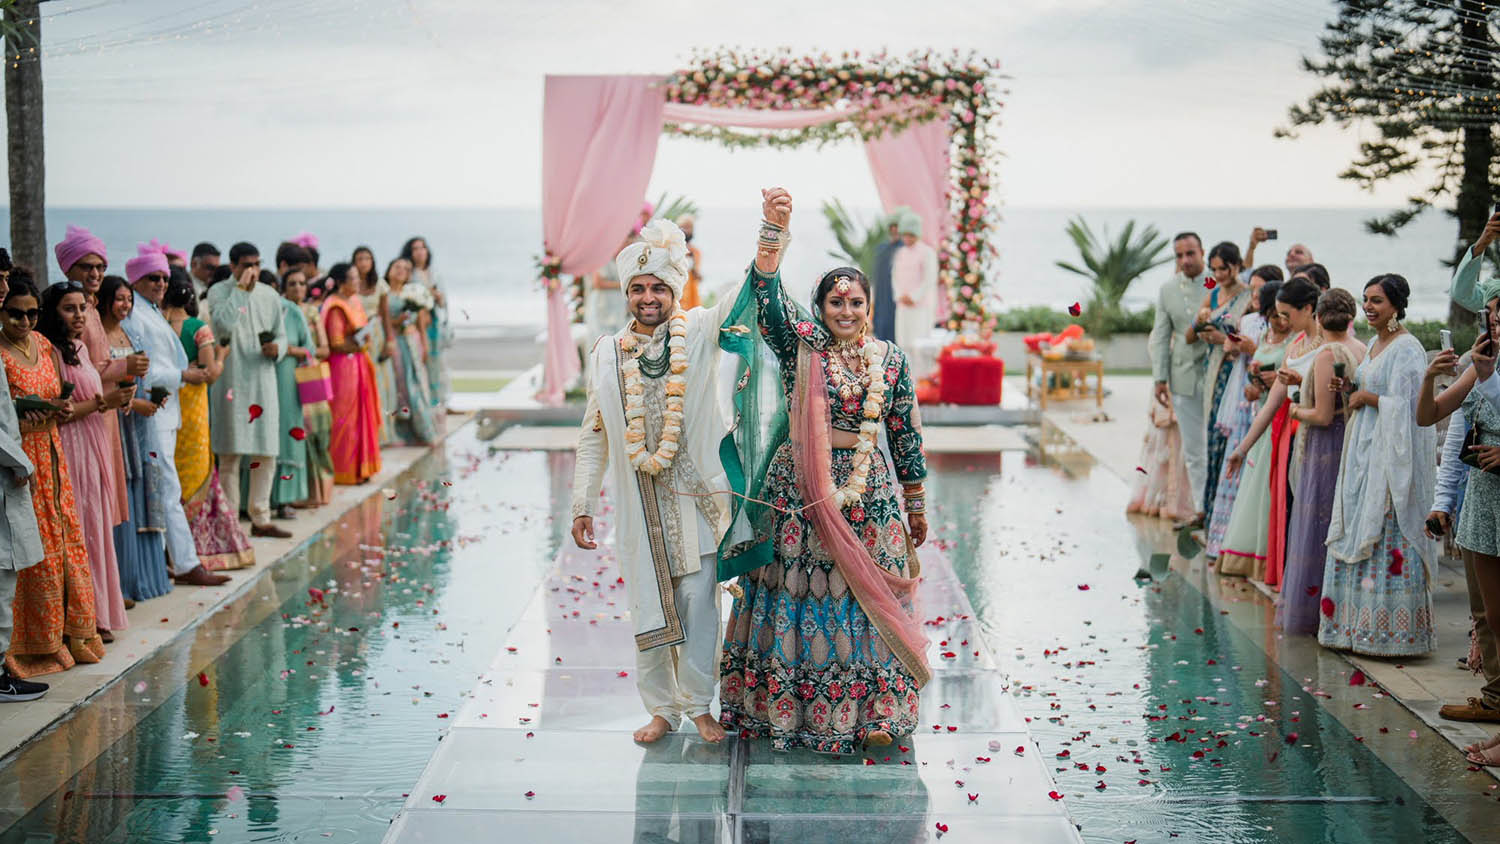 Wedding Venue in Bali | Bali Happy Events - Villa Vedas